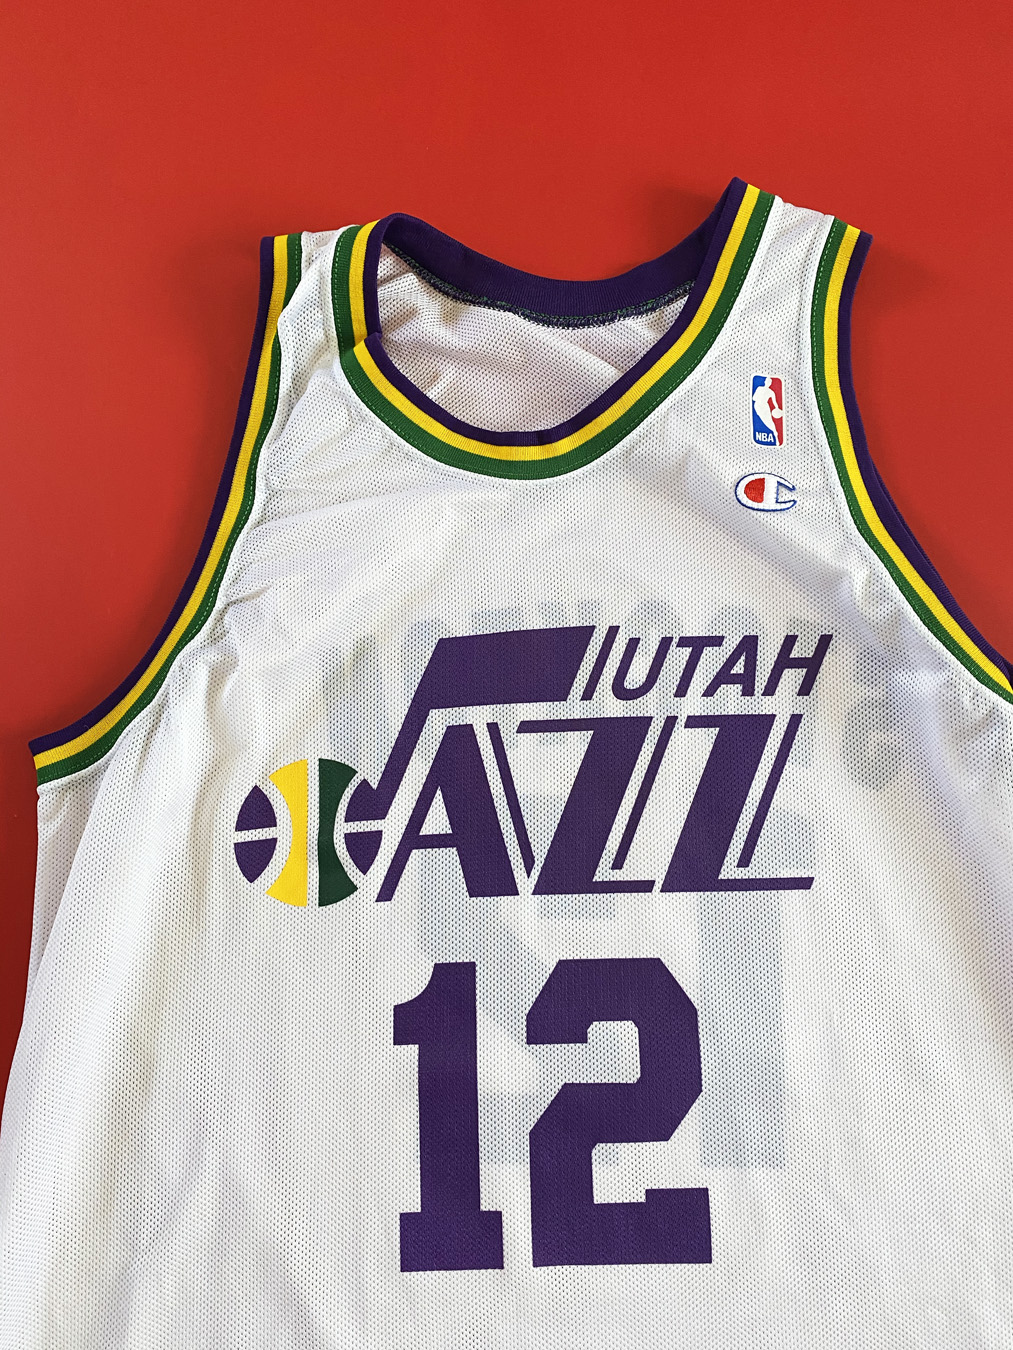 Utah Jazz Jersey 90's - Large – Lot 1 Vintage